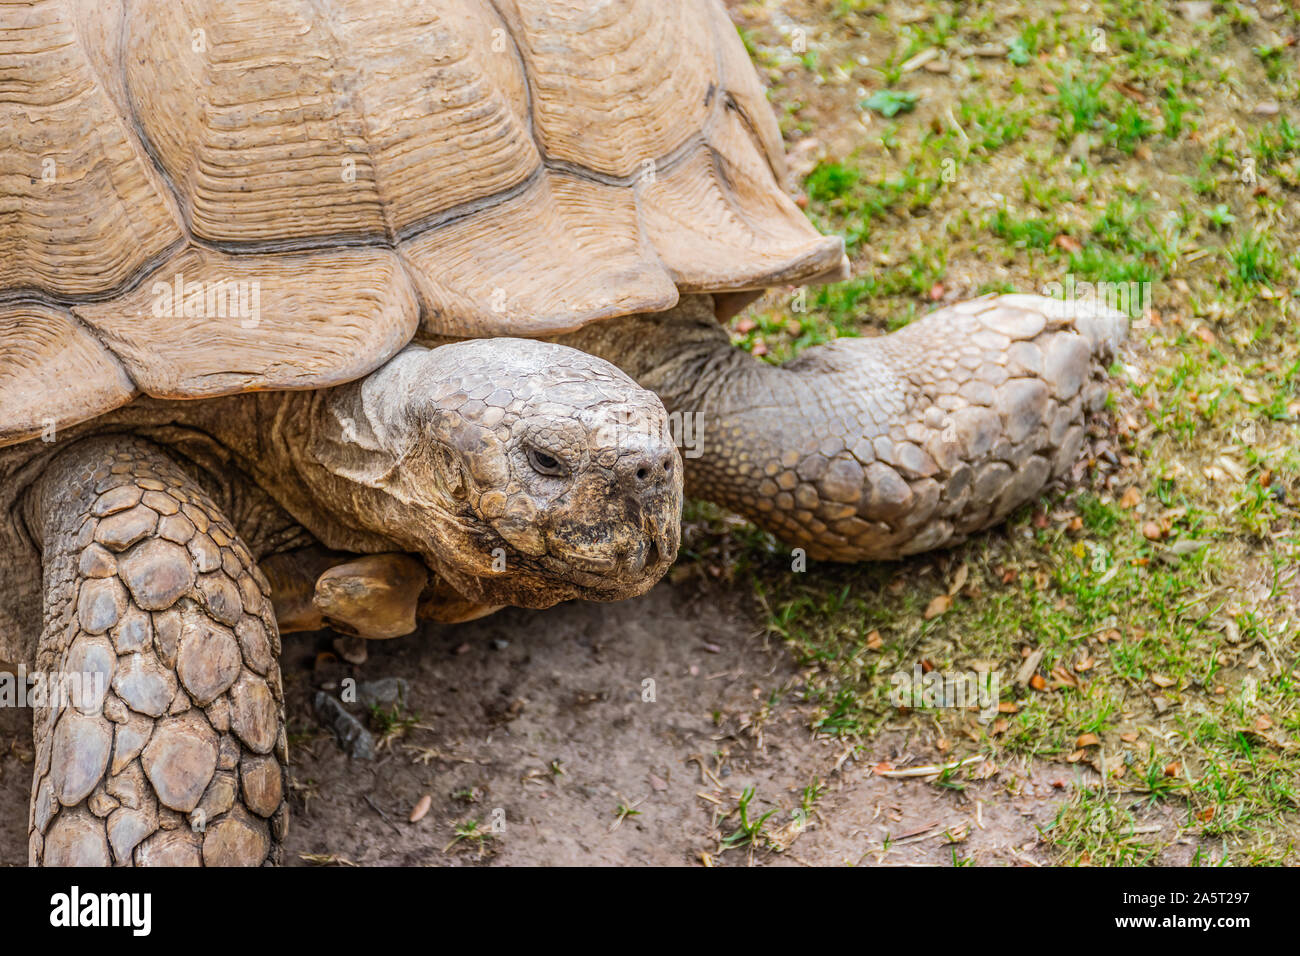 Close up de tortues géantes sur l'herbe verte. Reptiles terrestres. Banque D'Images